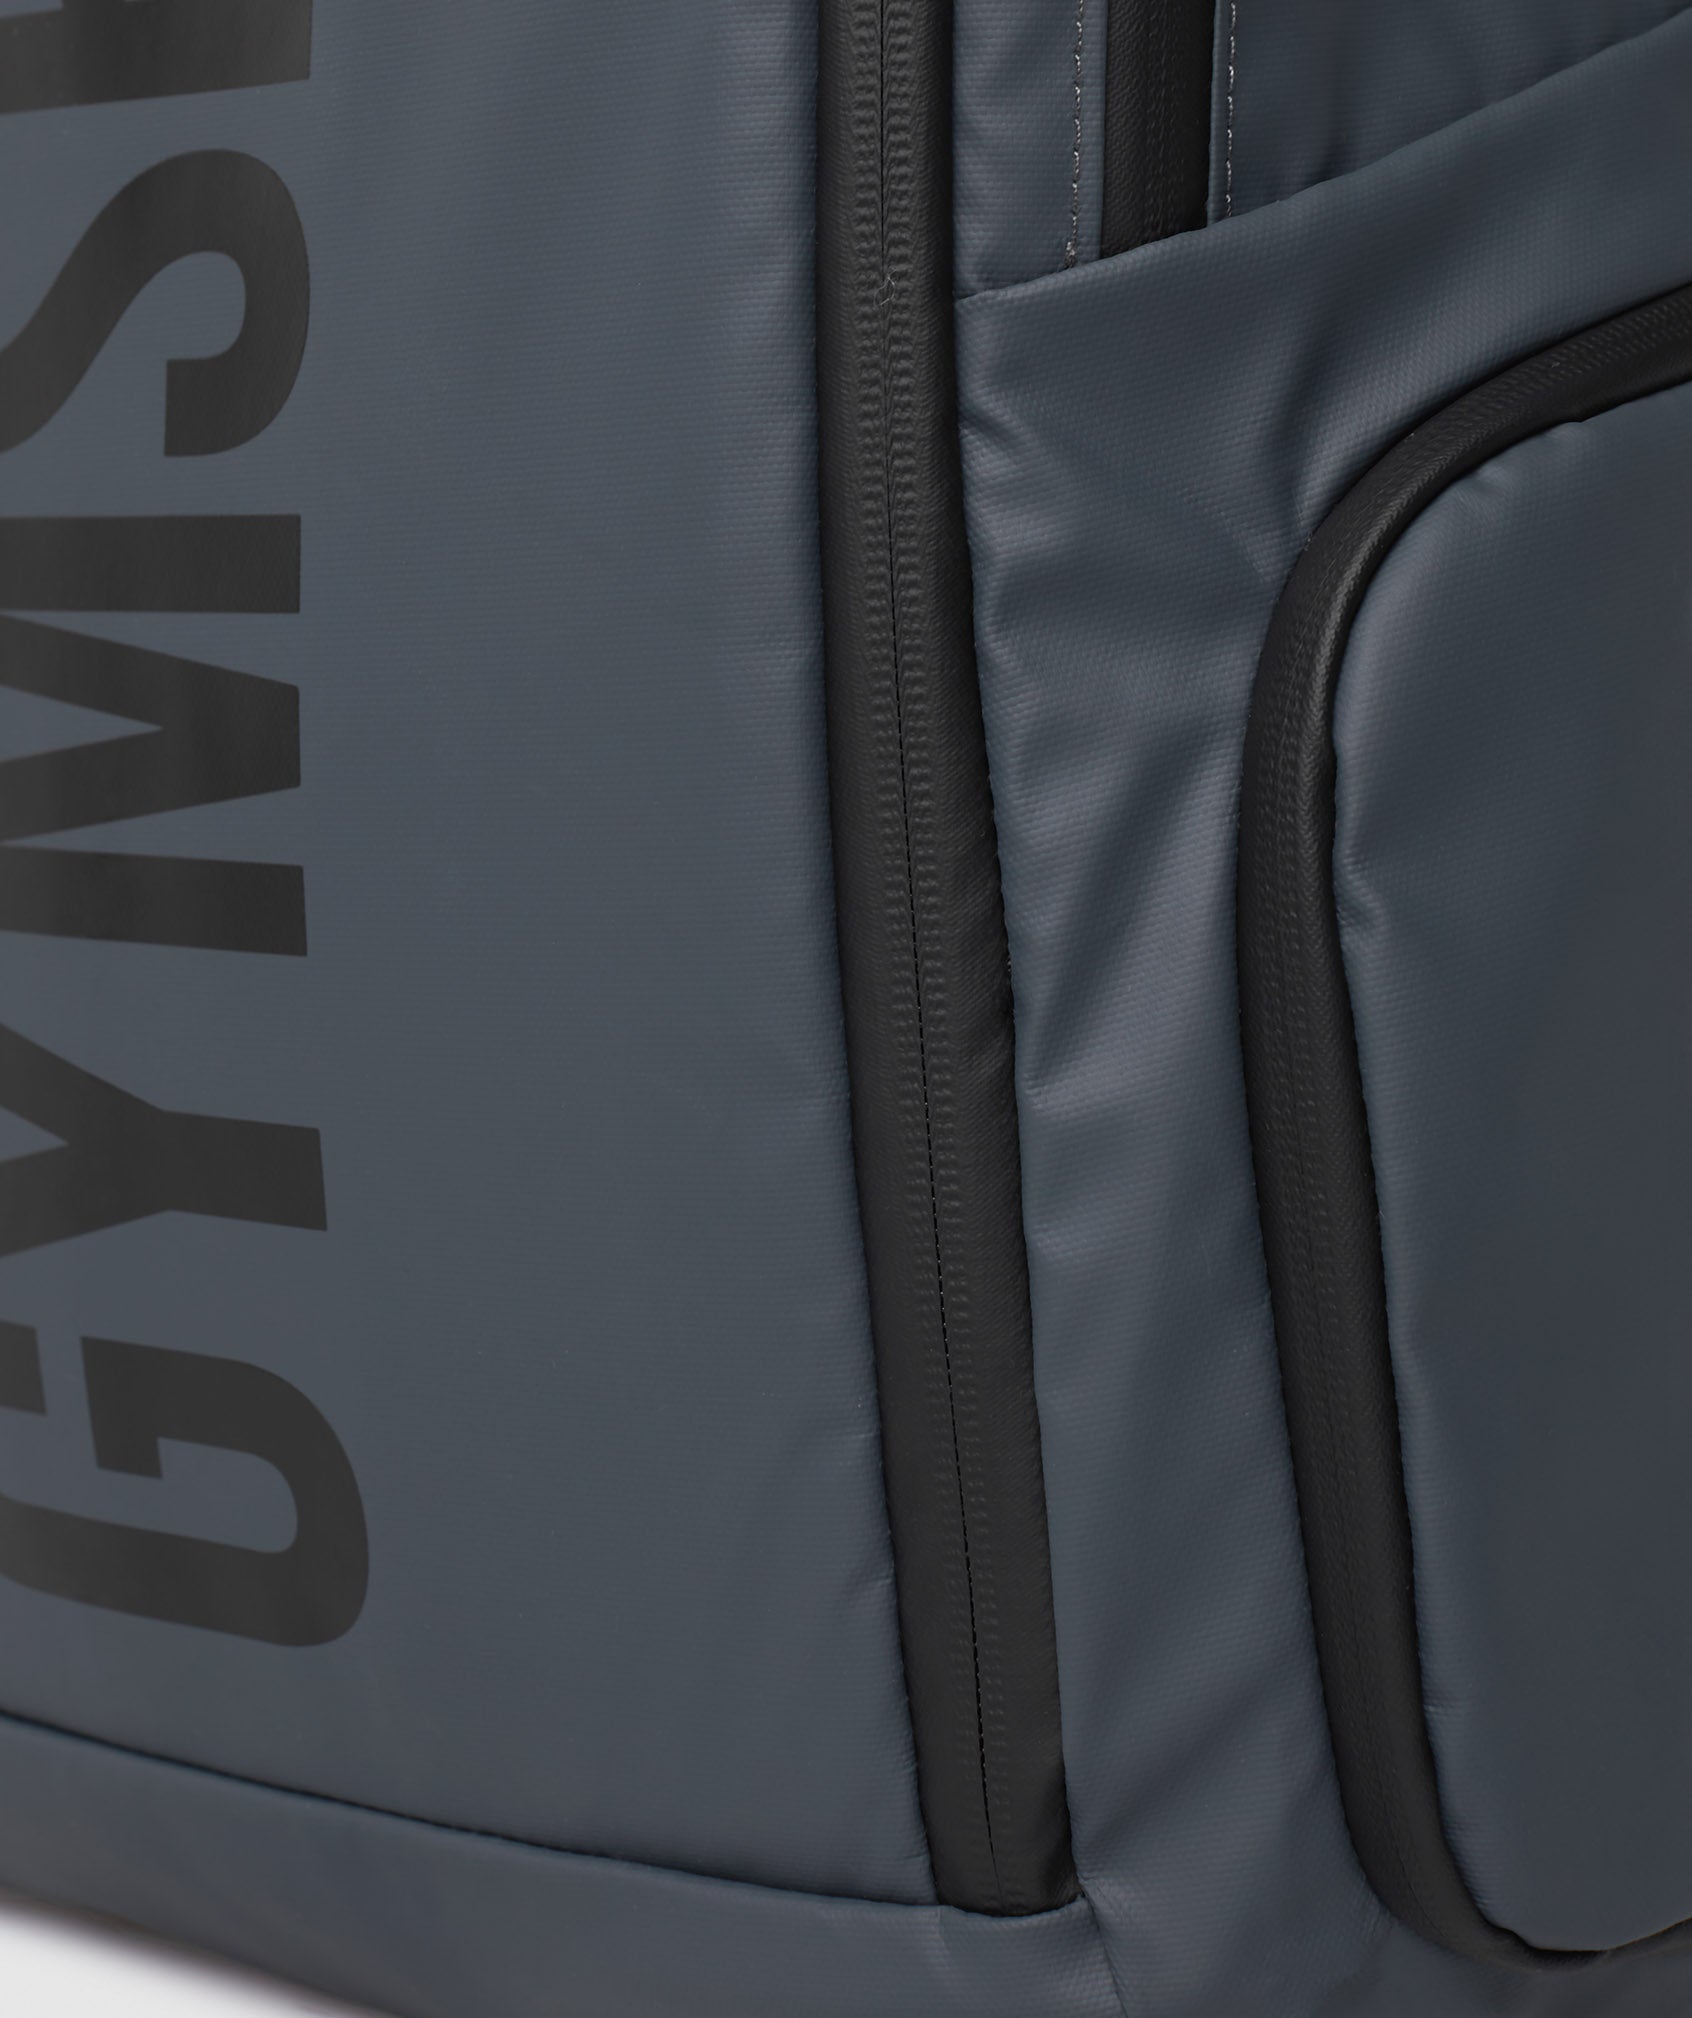 X-Series 0.3 Backpack in Cosmic Grey - view 5